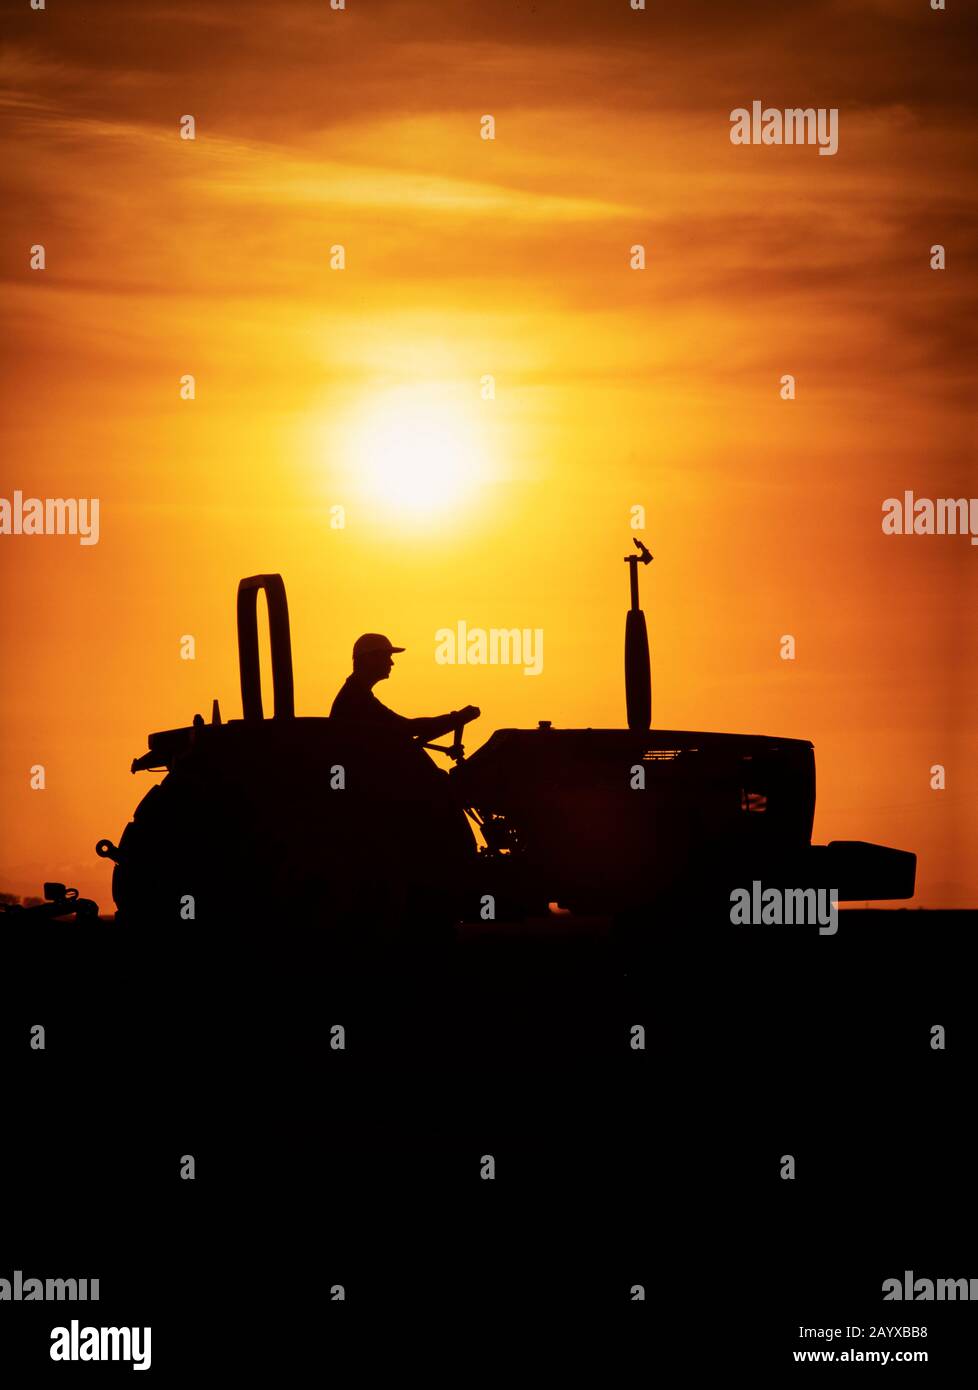 Un agriculteur conduit un tracteur silhouetté par la lumière chaude du soleil. Banque D'Images